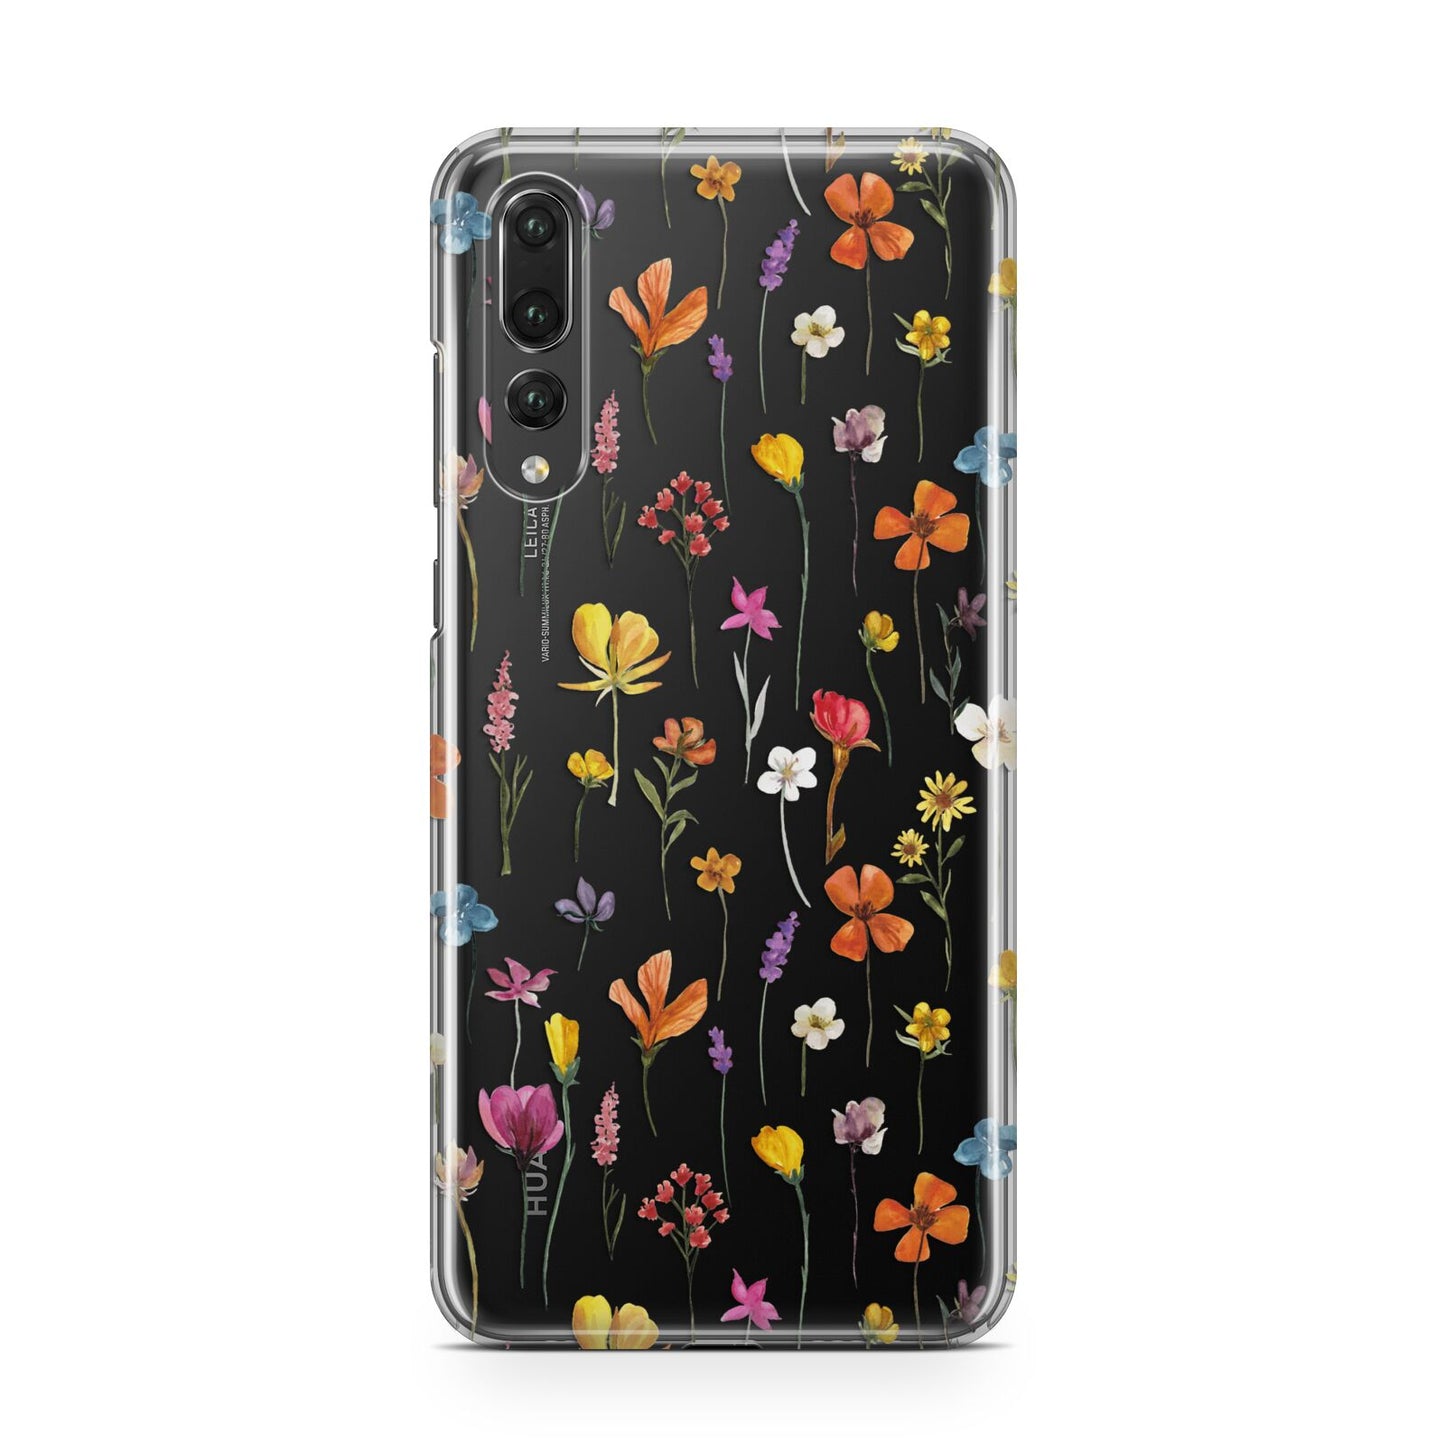 Botanical Floral Huawei P20 Pro Phone Case